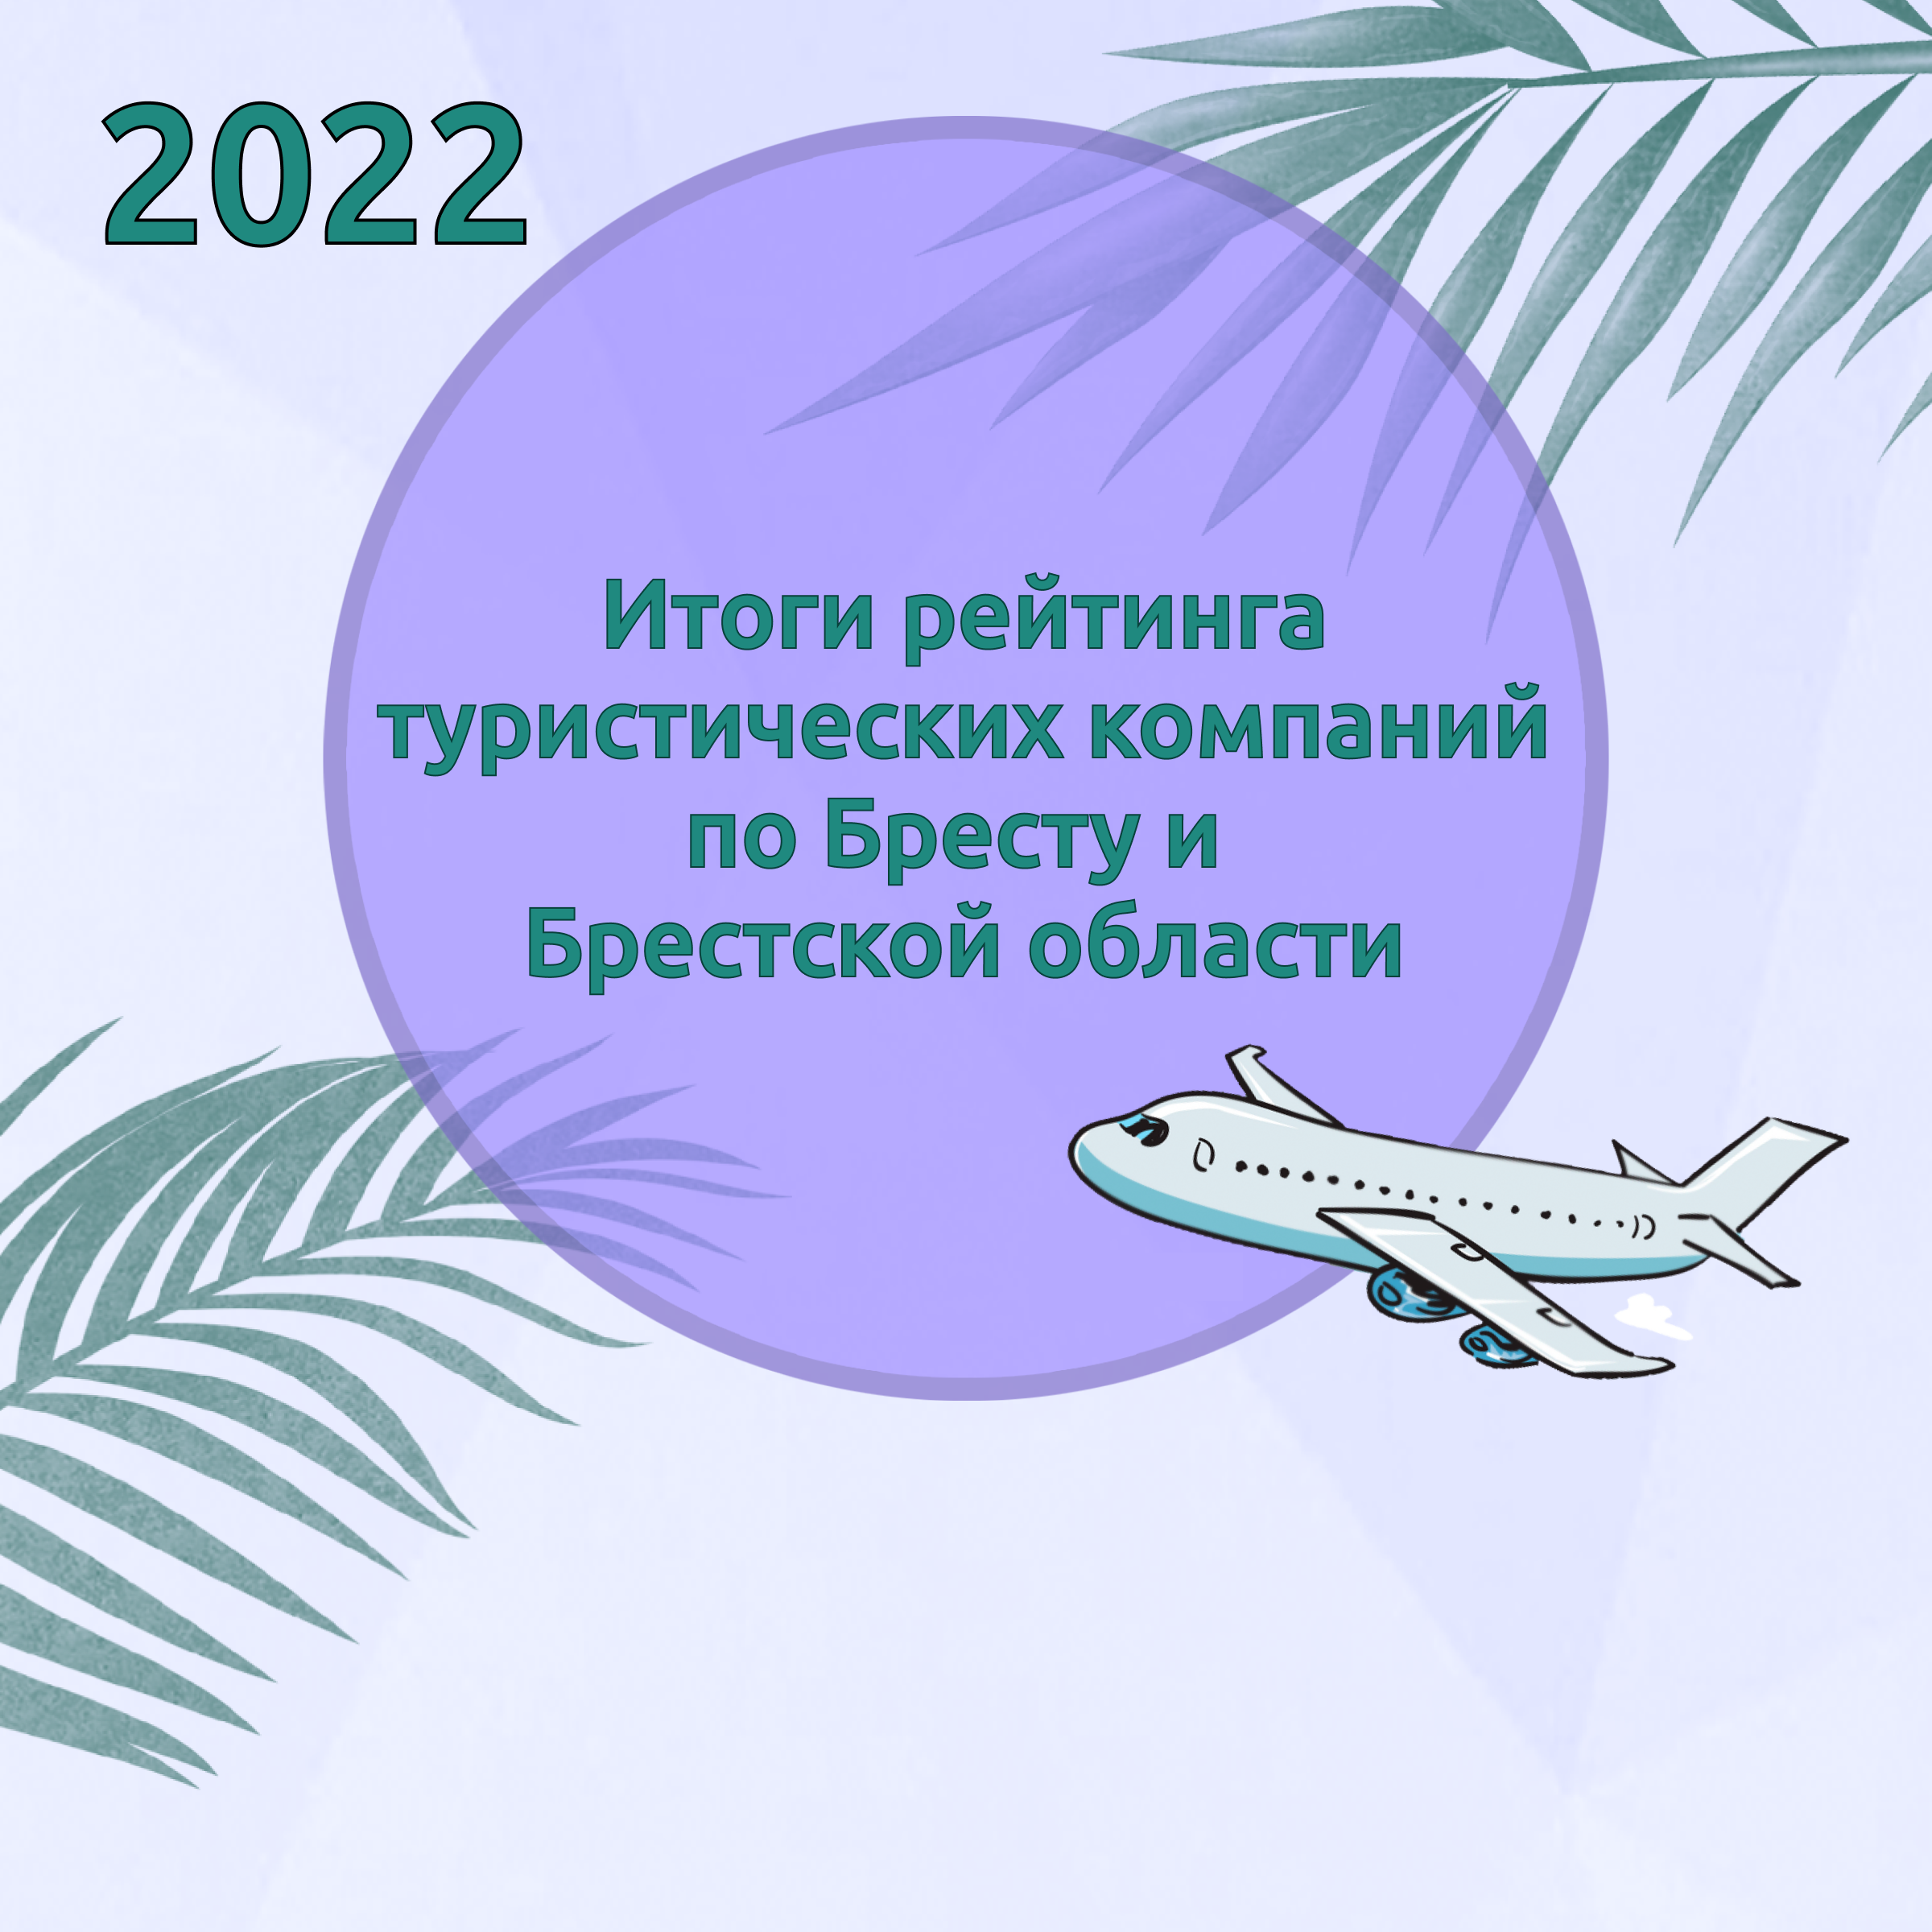 Итоги рейтинга туристических компаний по Бресту и Брестской области за 2022 год